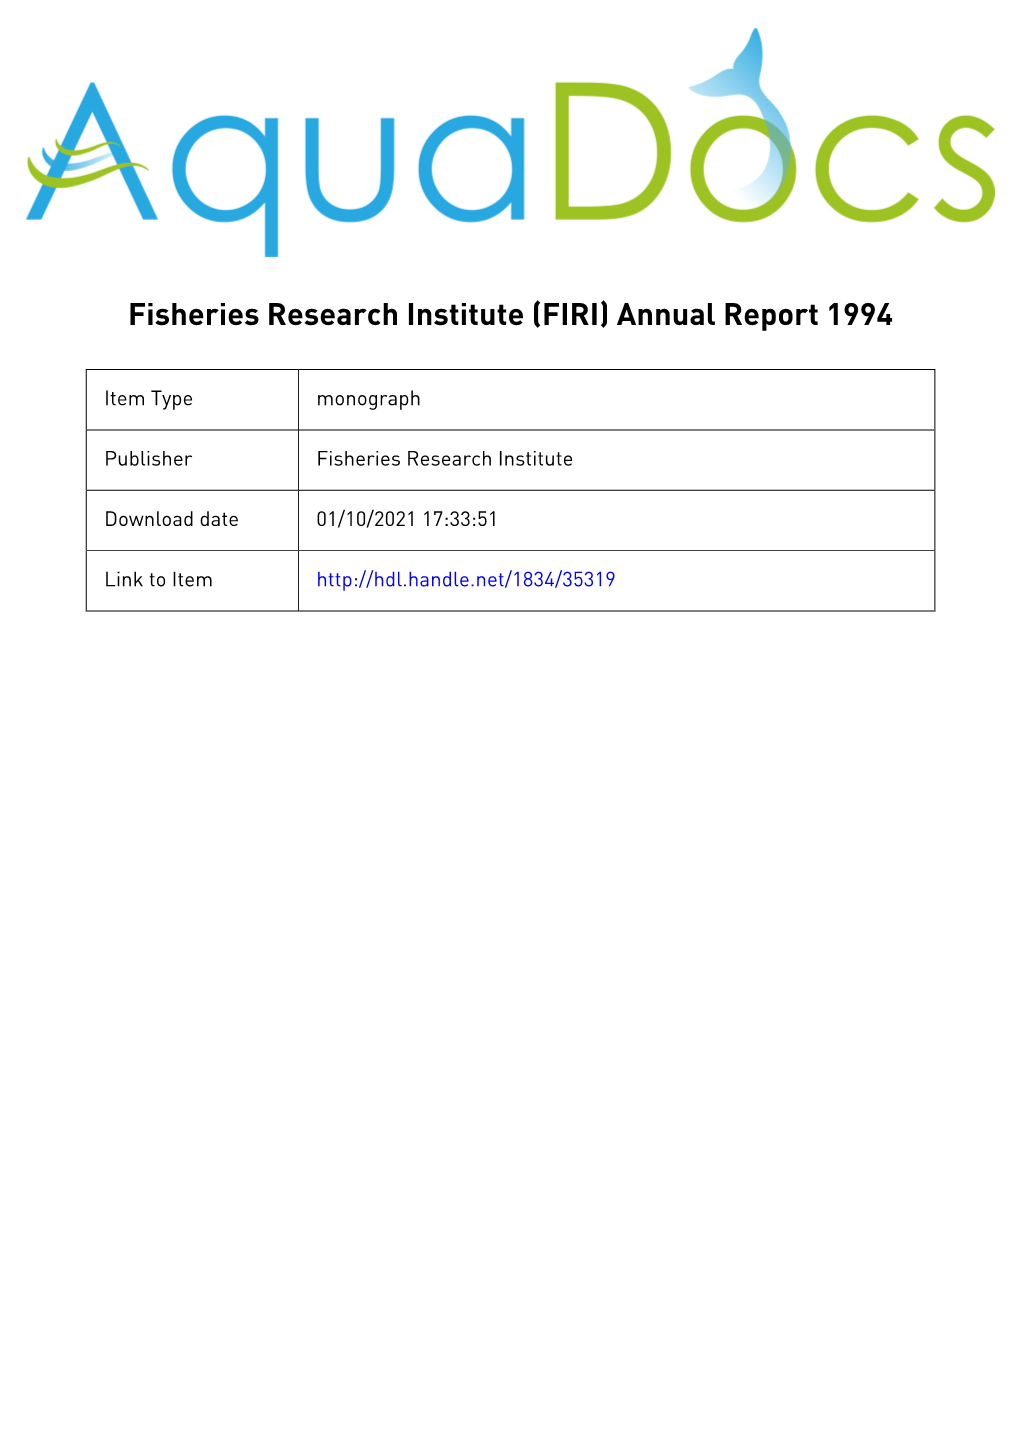 (Naro) Fisheries Research Institute (Firi) Annual Report